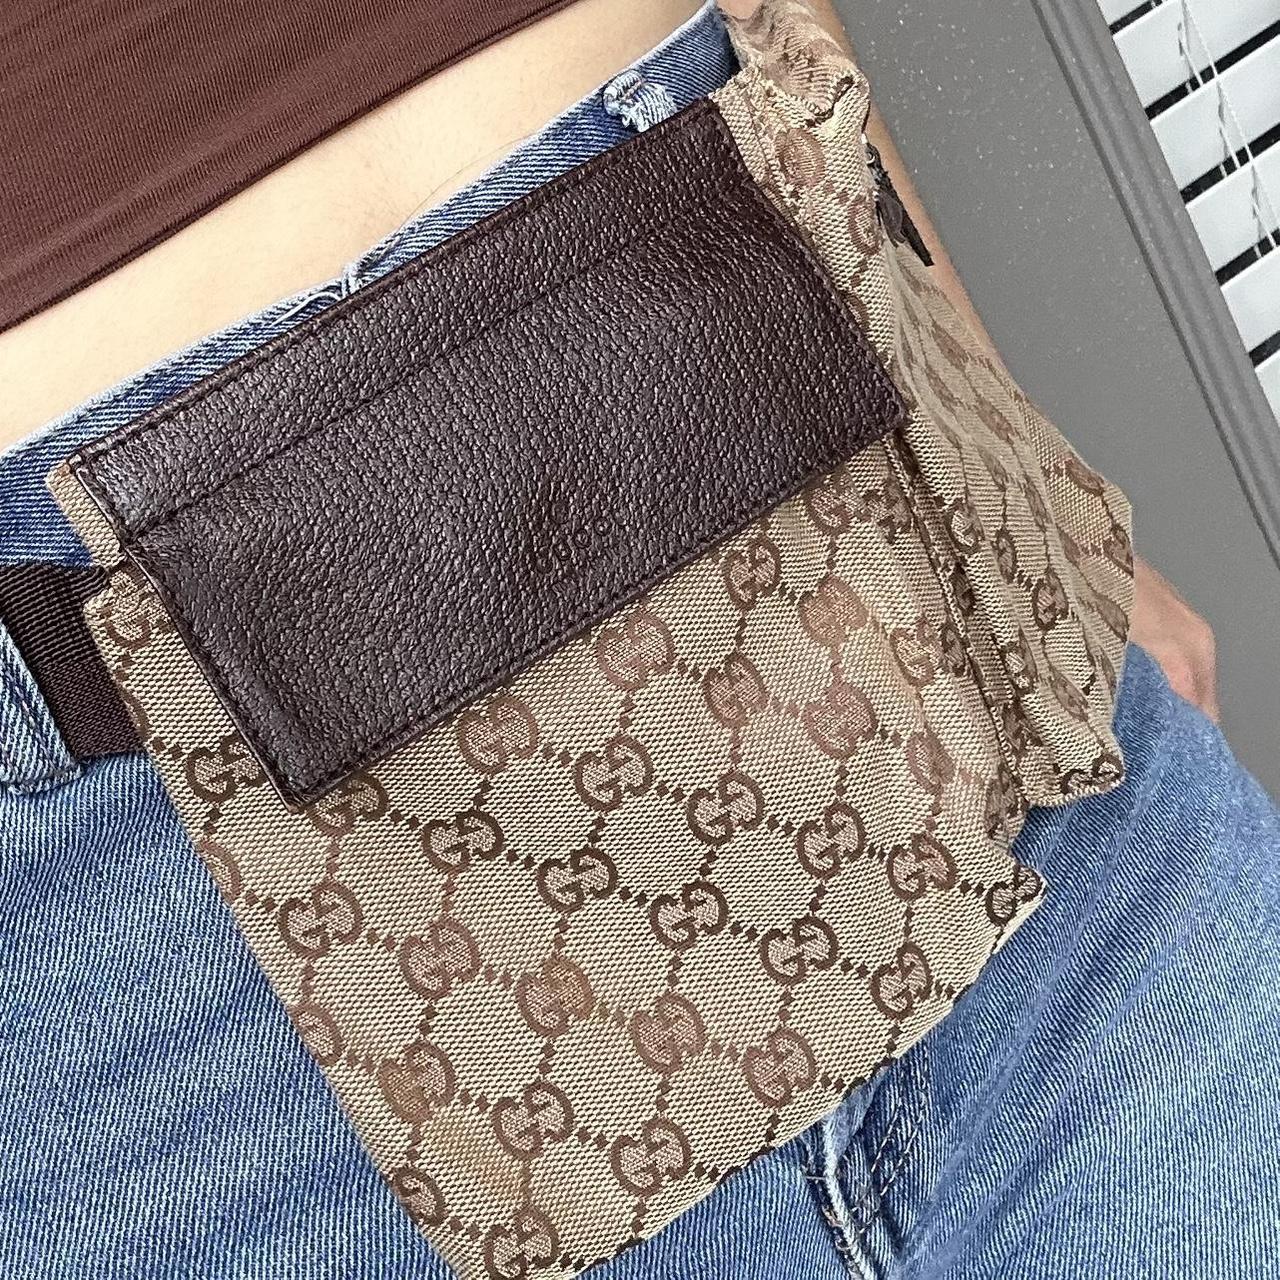 Gucci Belt Bag ⭐️ fanny pack / waist bag - Depop